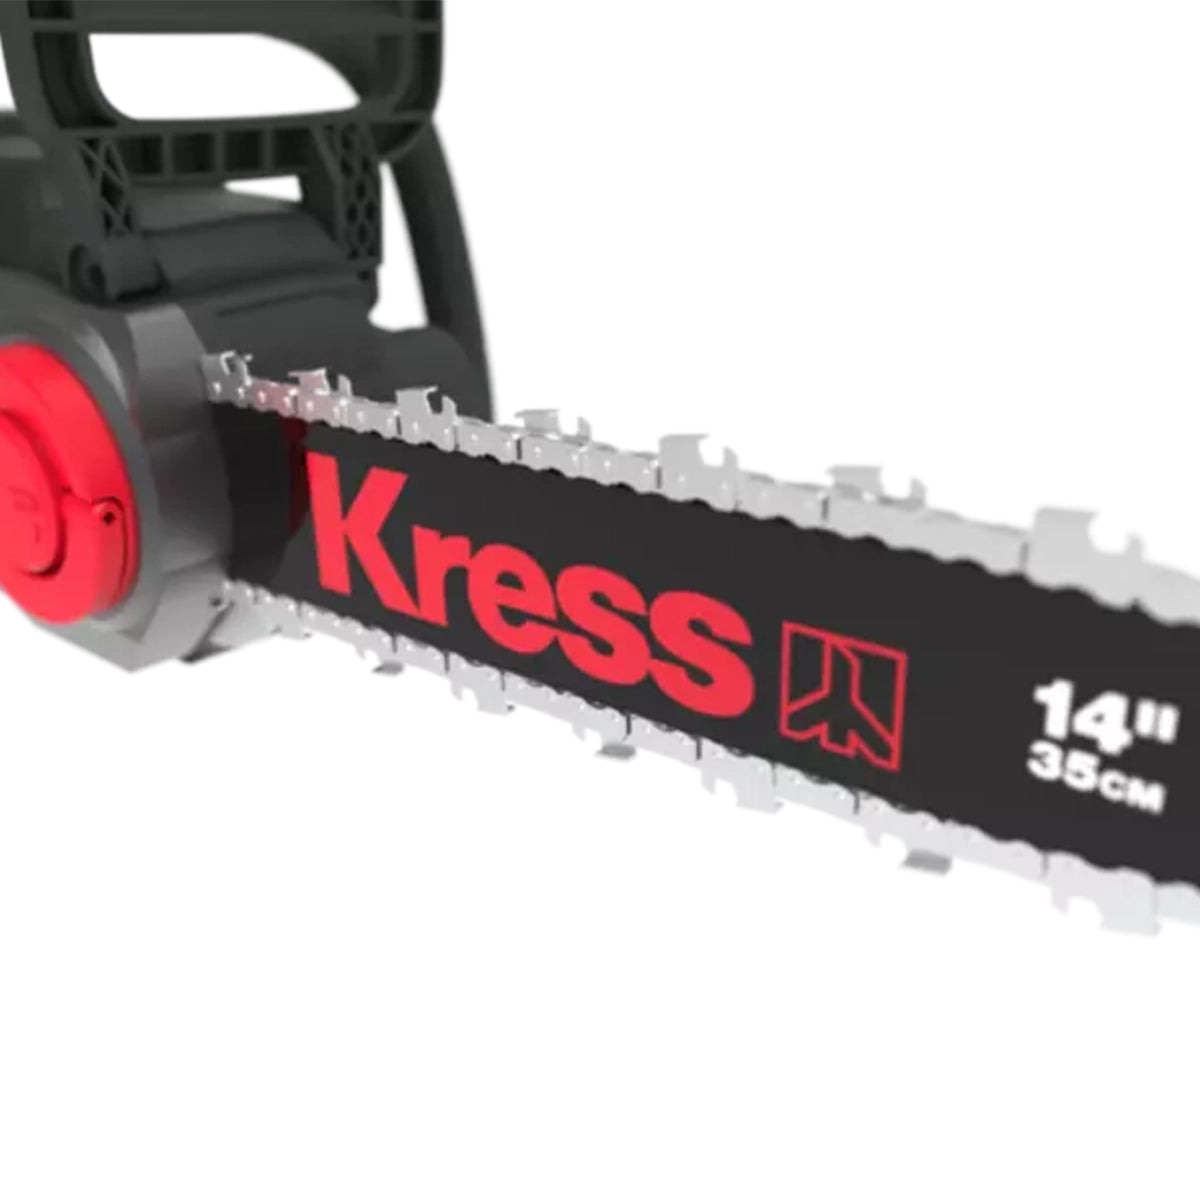 Kress KG367E.9 60V 35cm Cordless Chainsaw (Tool Only)